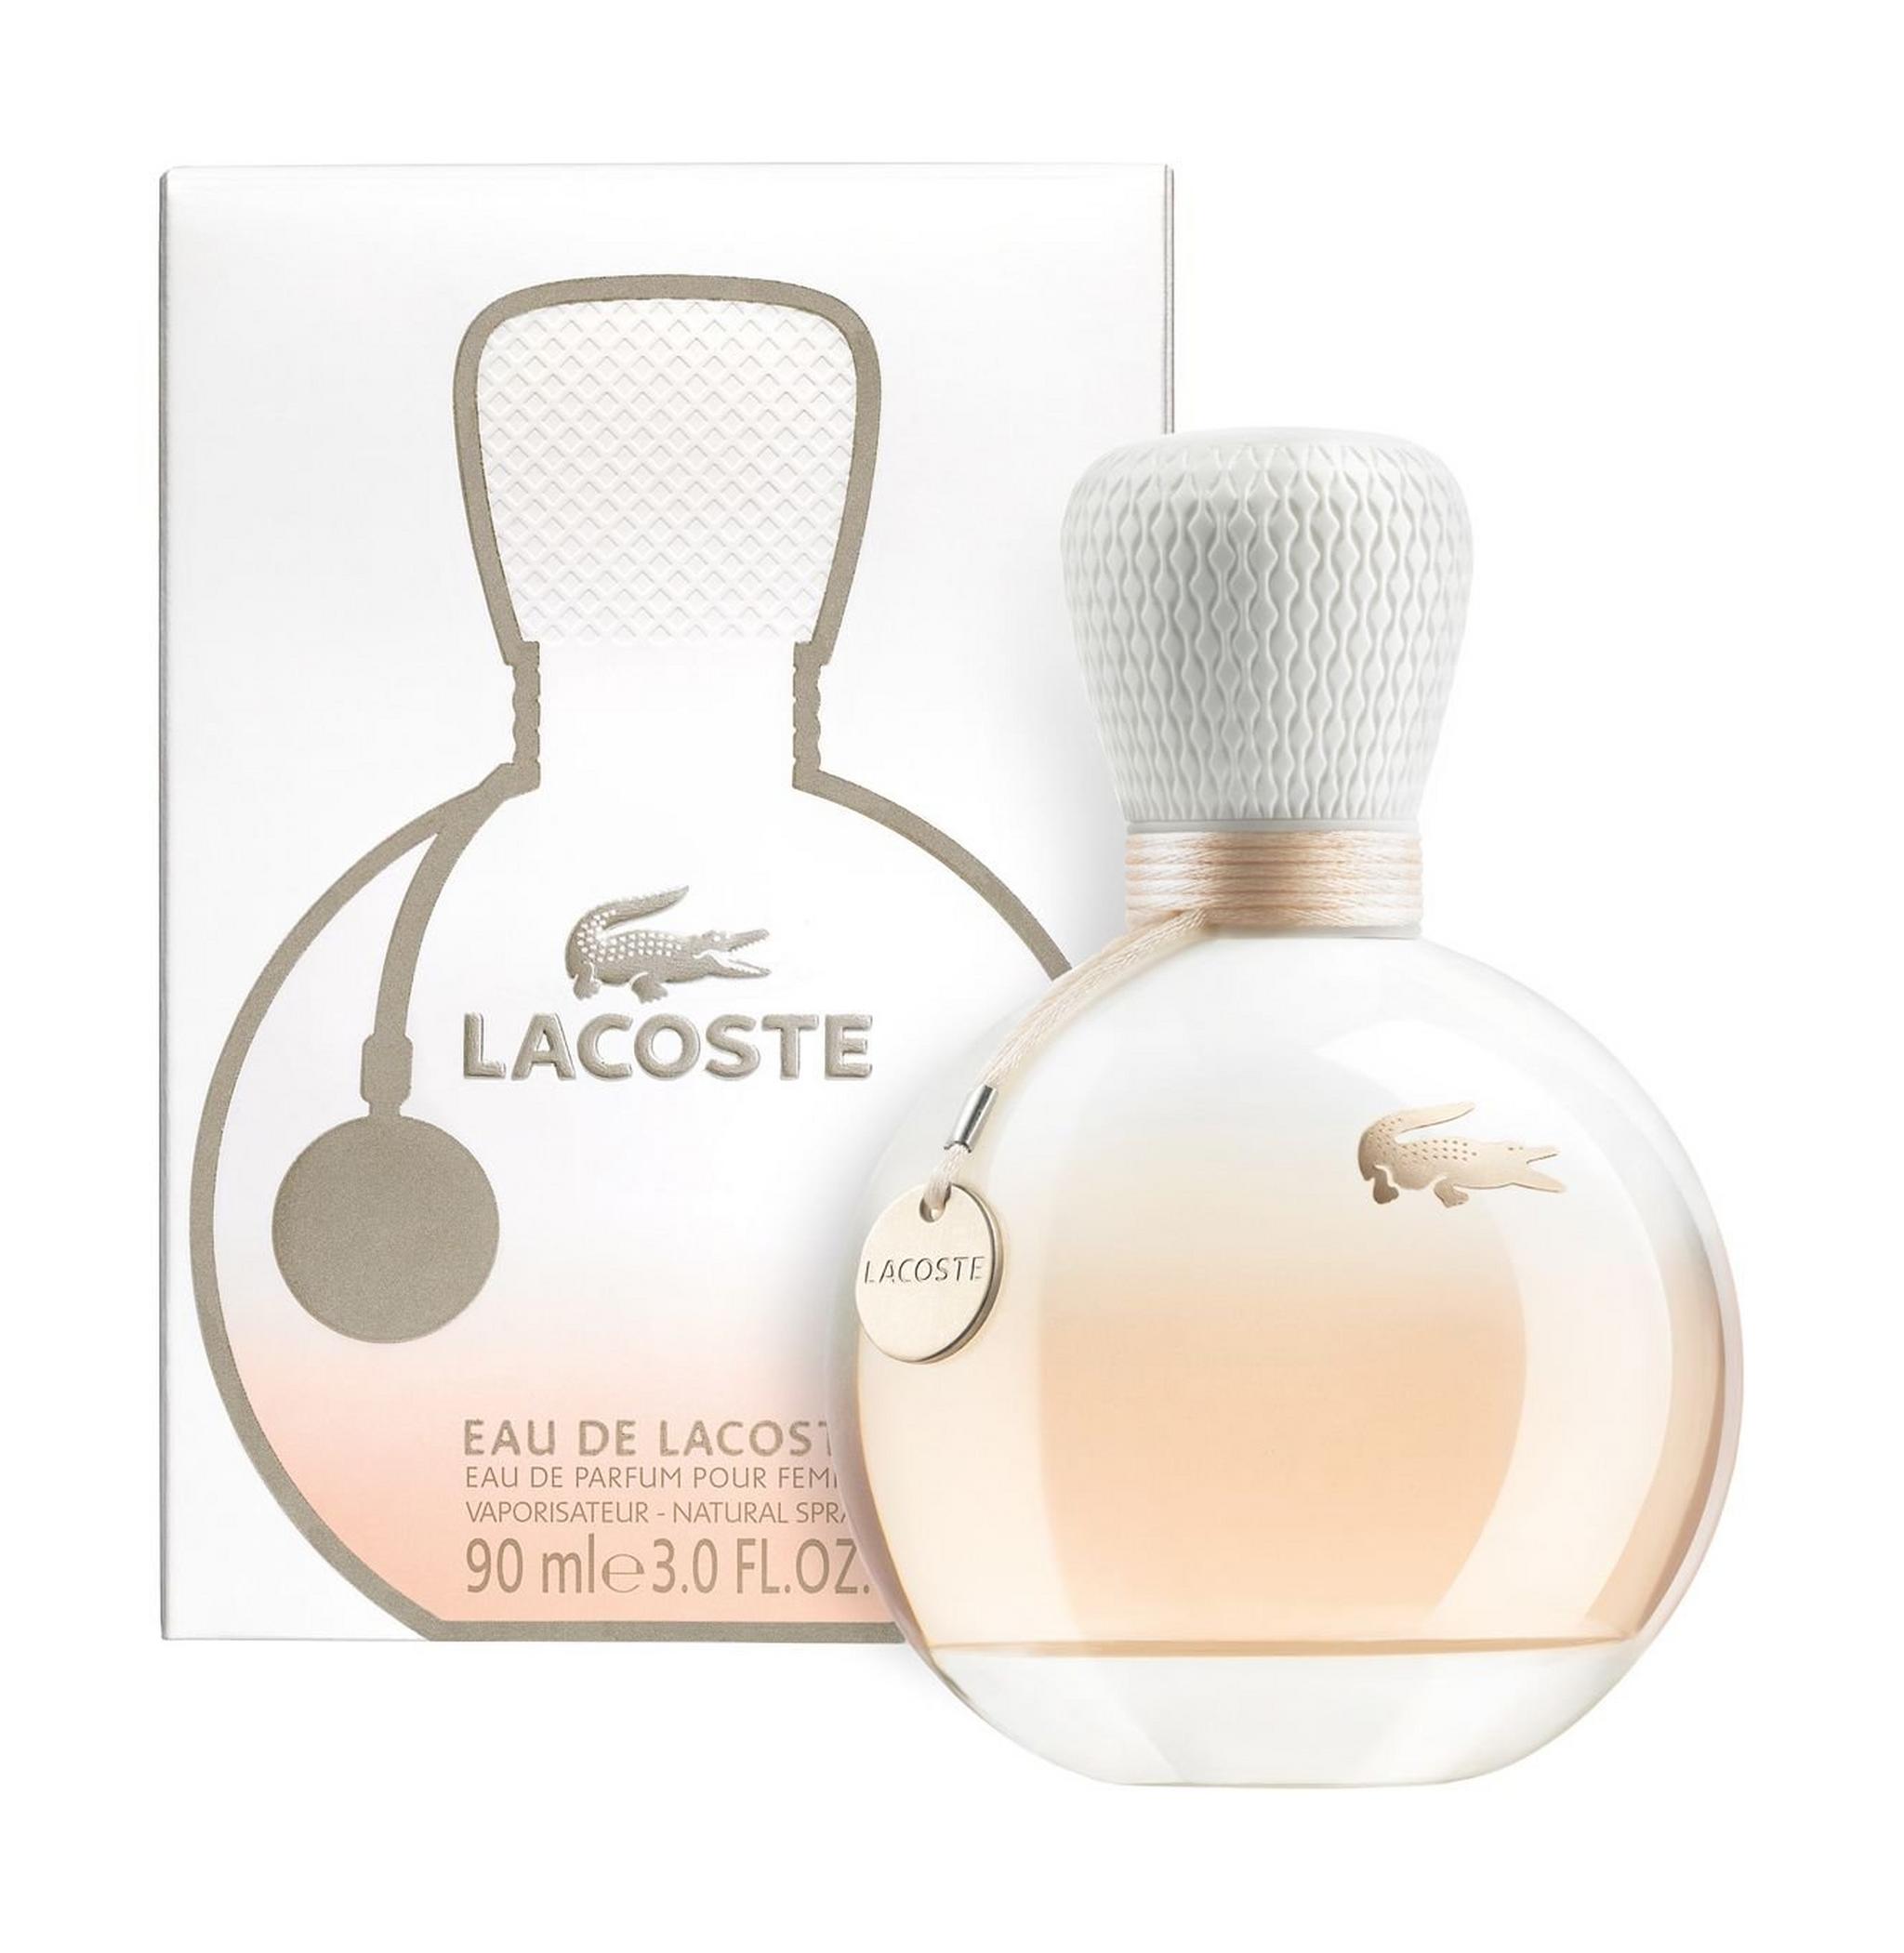 LACOSTE Eau de Lacoste - Eau de Parfum 90 ml